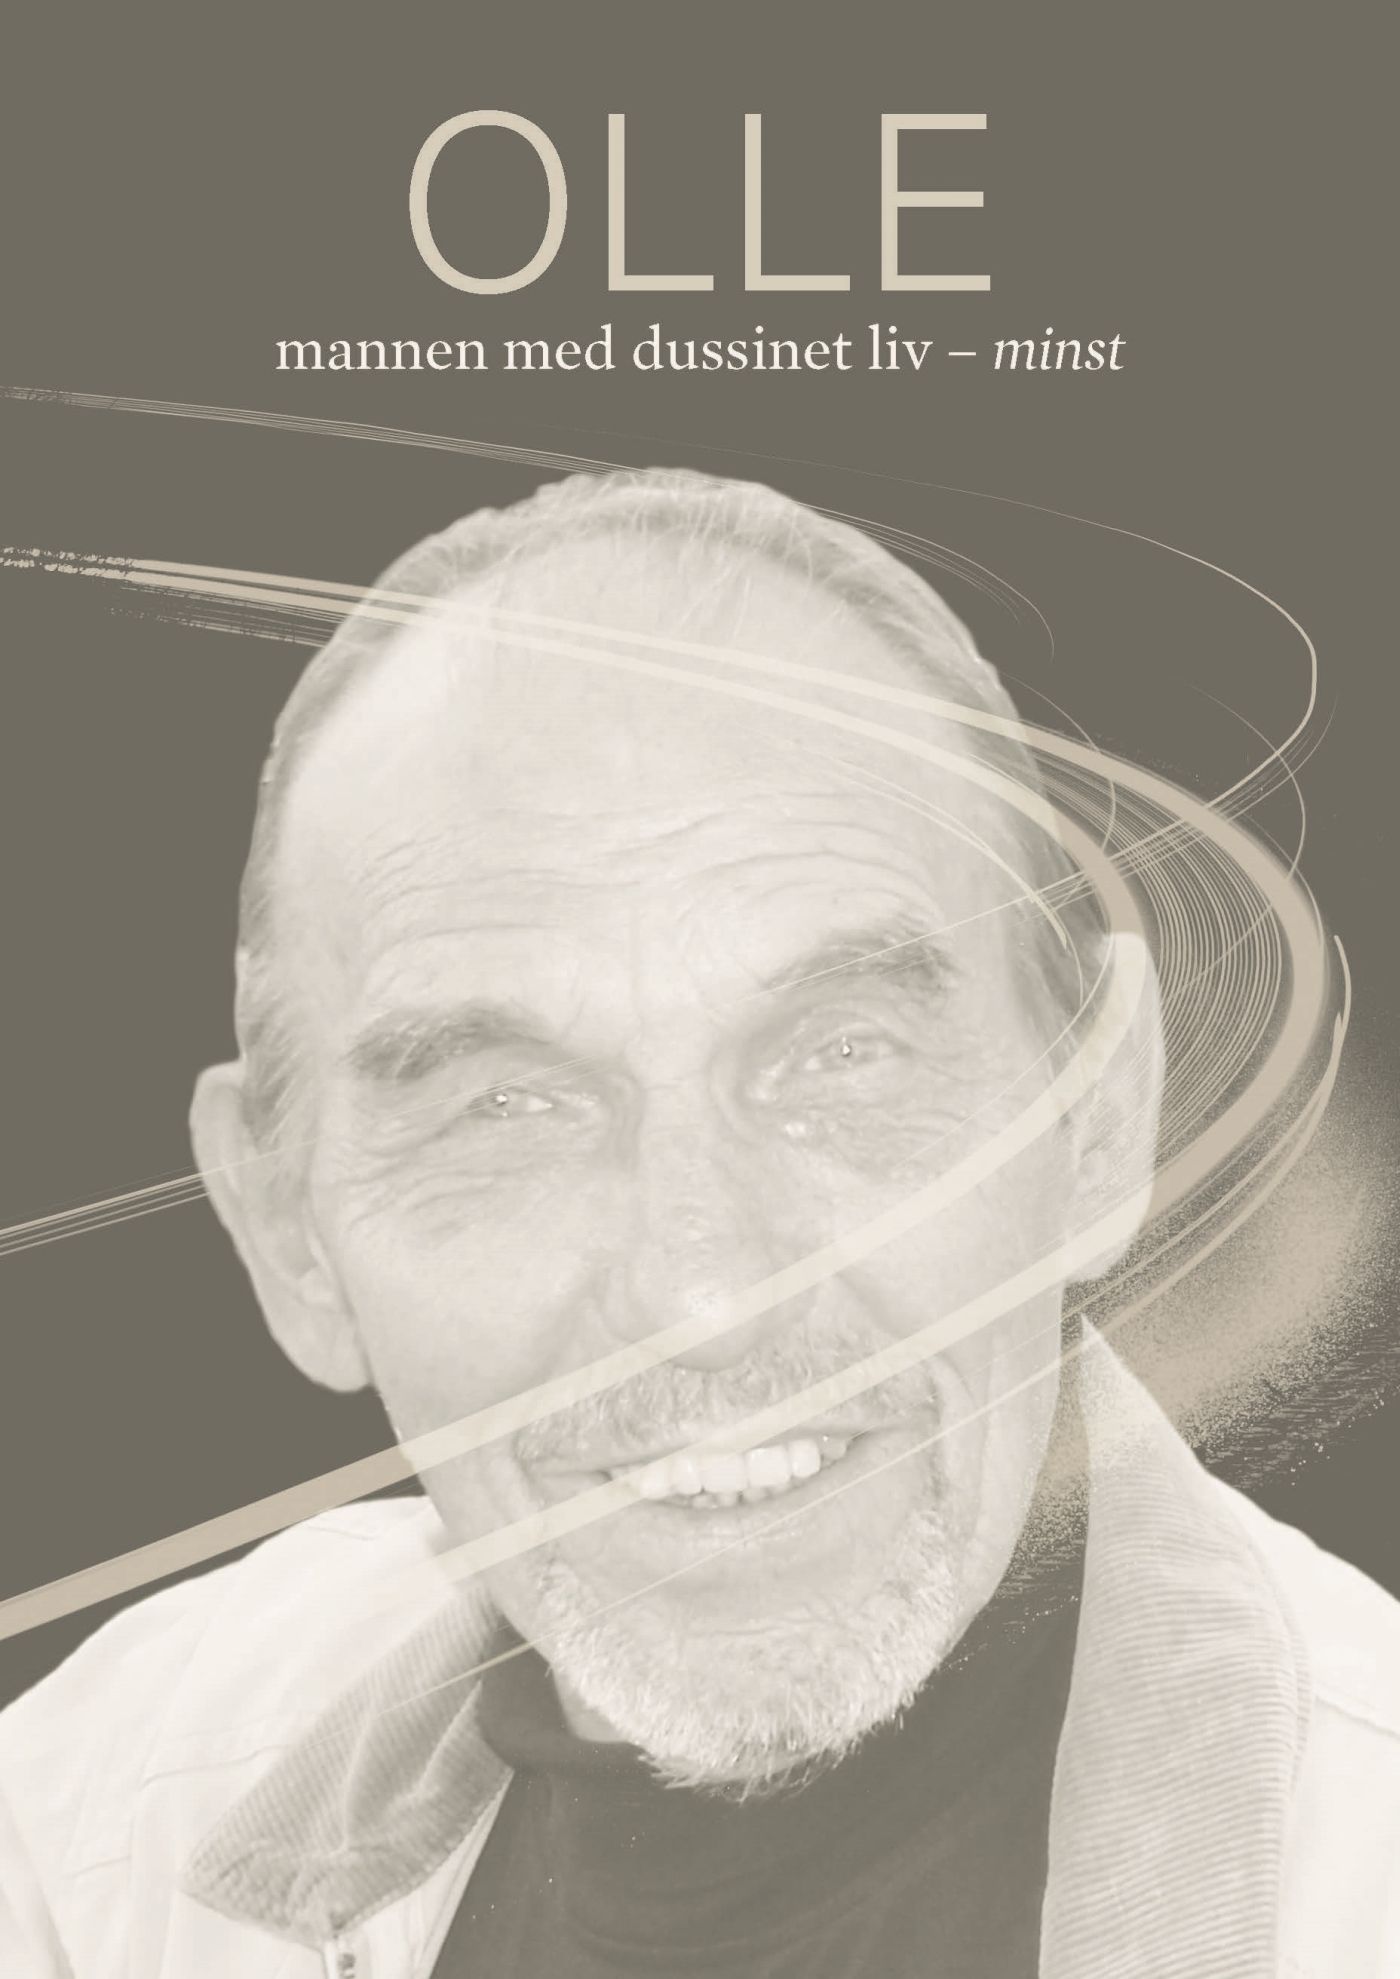 Olle, mannen med dussinet liv - minst., e-bok av Barbro Robertsson Strand